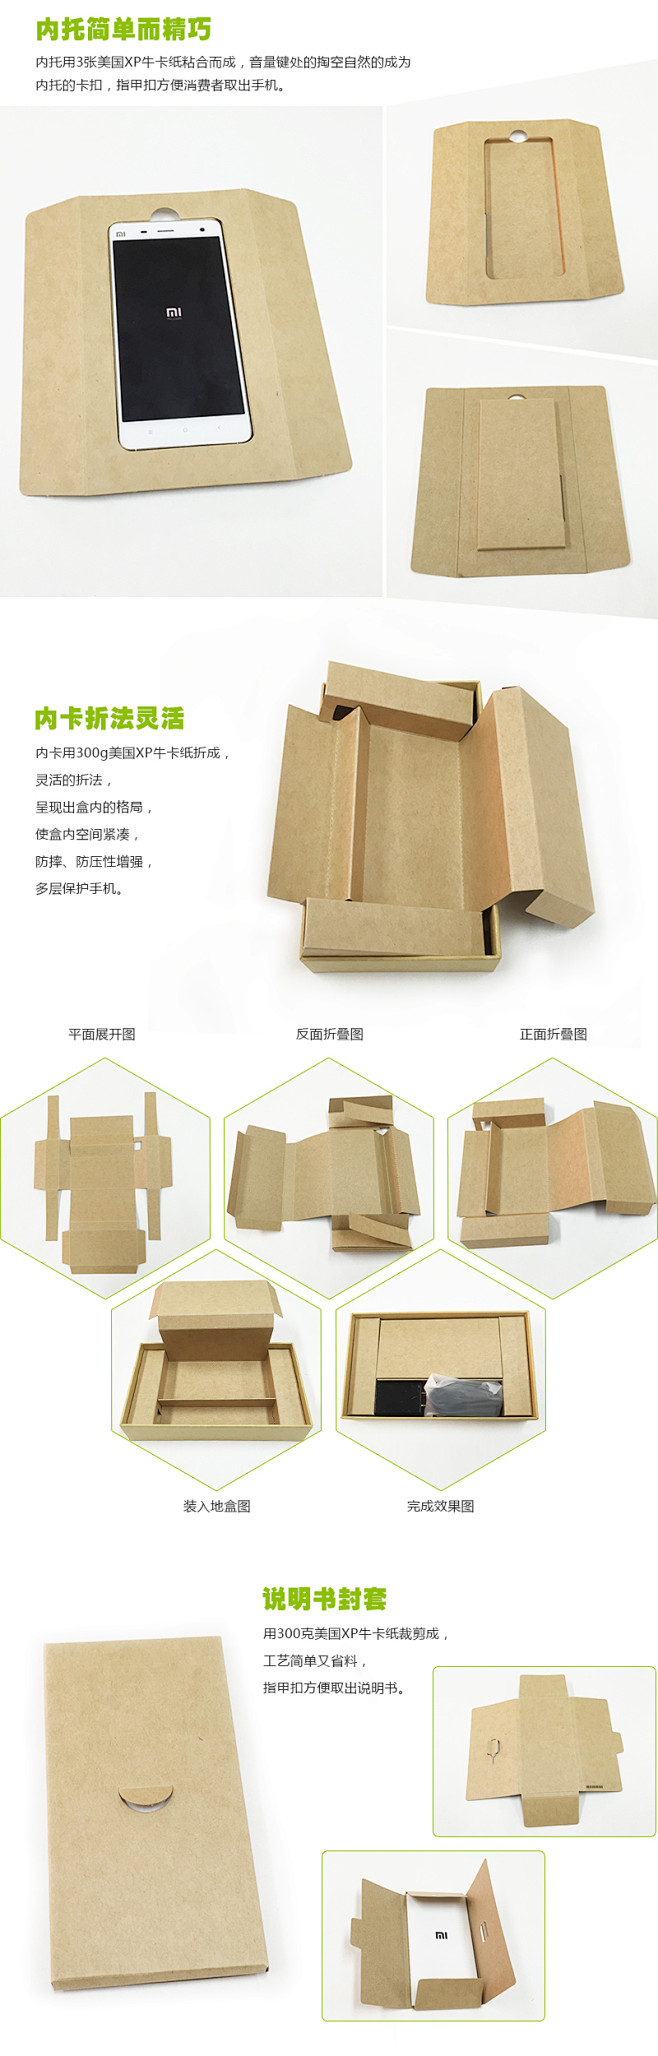 小米4手机包装盒3